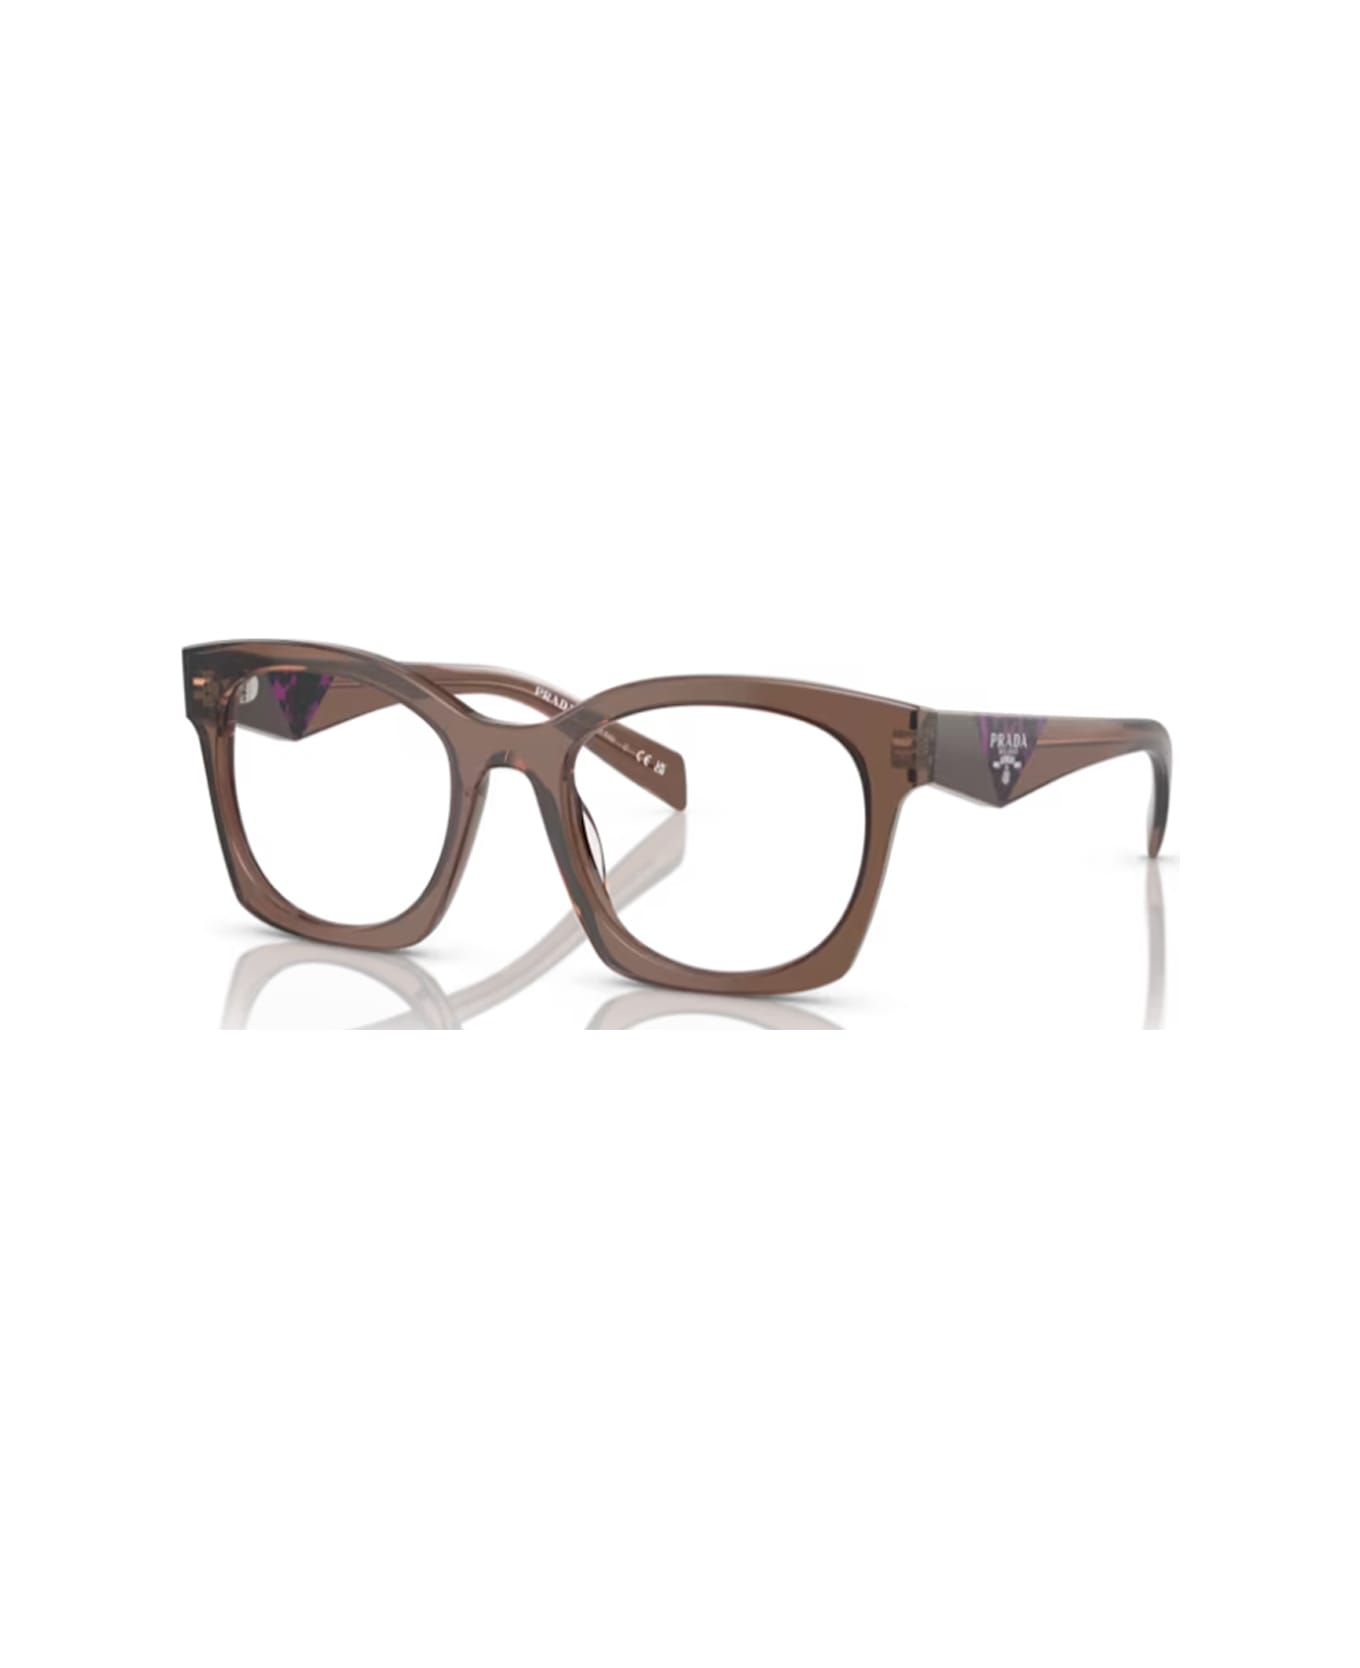 Prada Eyewear Pra05v 17o1o1 Glasses - Marrone